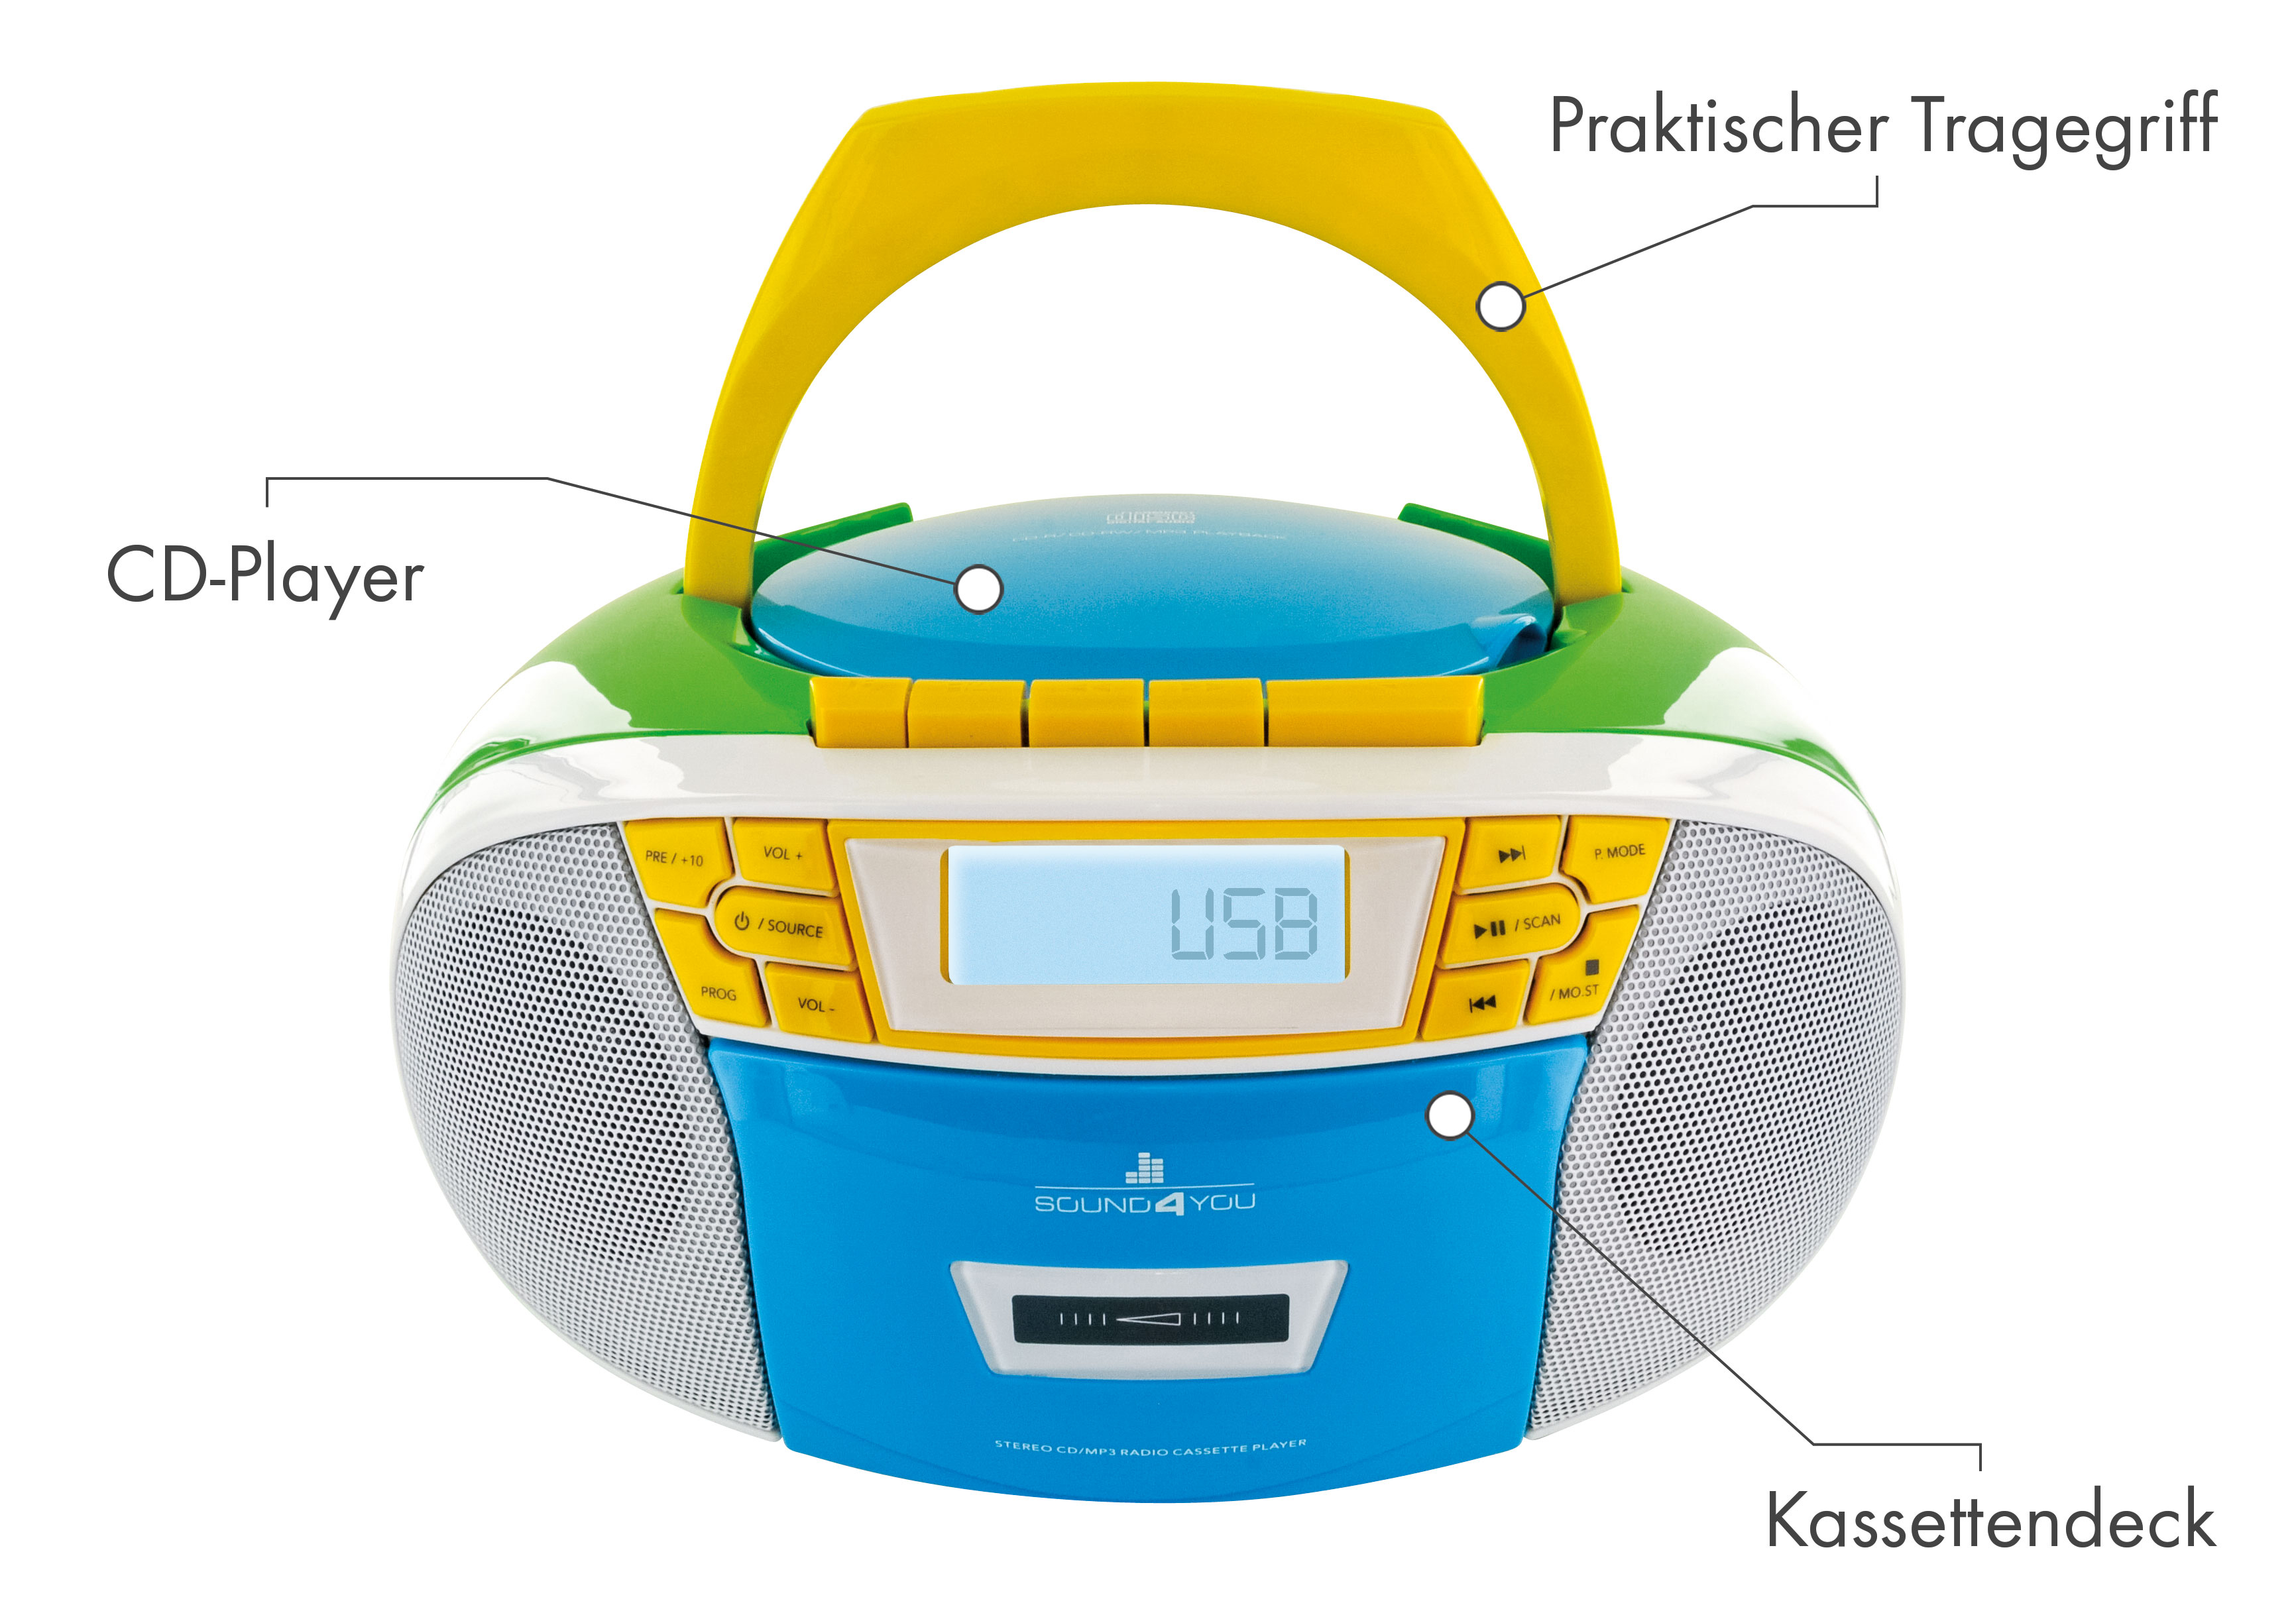 und -661644- FM SCHWAIGER Kassettendeck Bunt Tragbarer CD-Player mit Radio, (Blau/Gelb/Grün/Weiß)